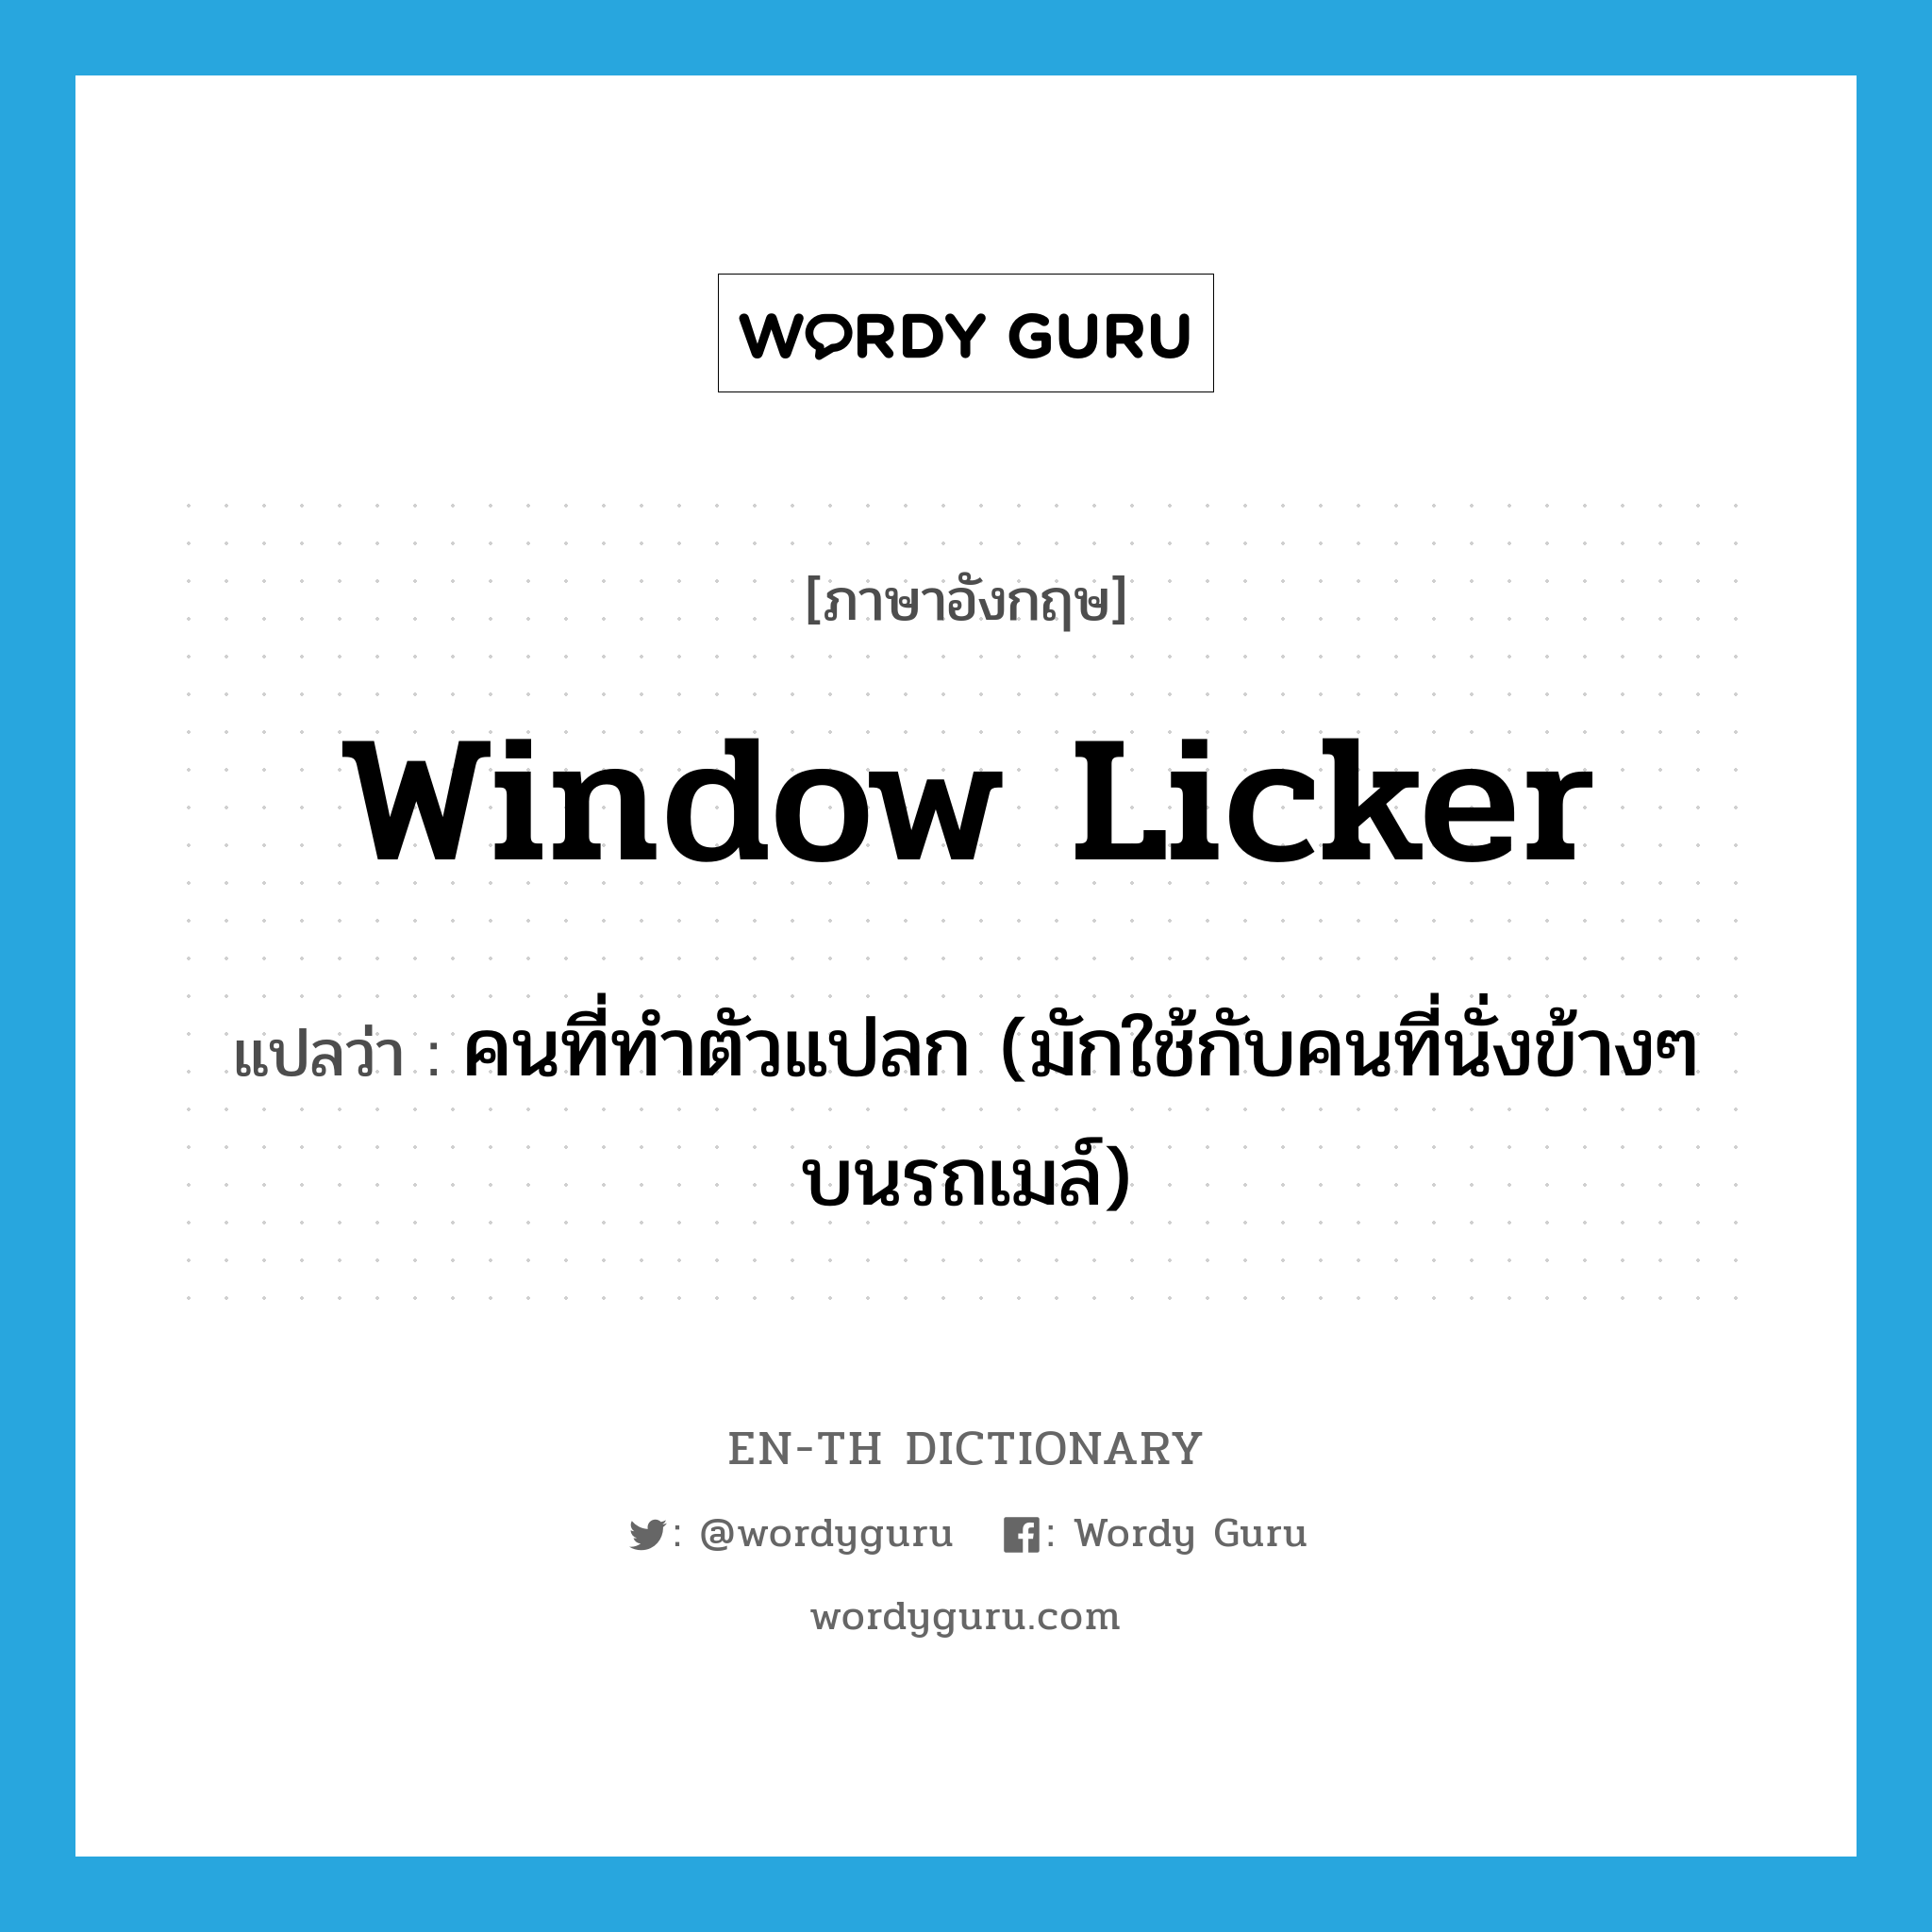 คนที่ทำตัวแปลก (มักใช้กับคนที่นั่งข้างๆ บนรถเมล์) ภาษาอังกฤษ?, คำศัพท์ภาษาอังกฤษ คนที่ทำตัวแปลก (มักใช้กับคนที่นั่งข้างๆ บนรถเมล์) แปลว่า window licker ประเภท SL หมวด SL